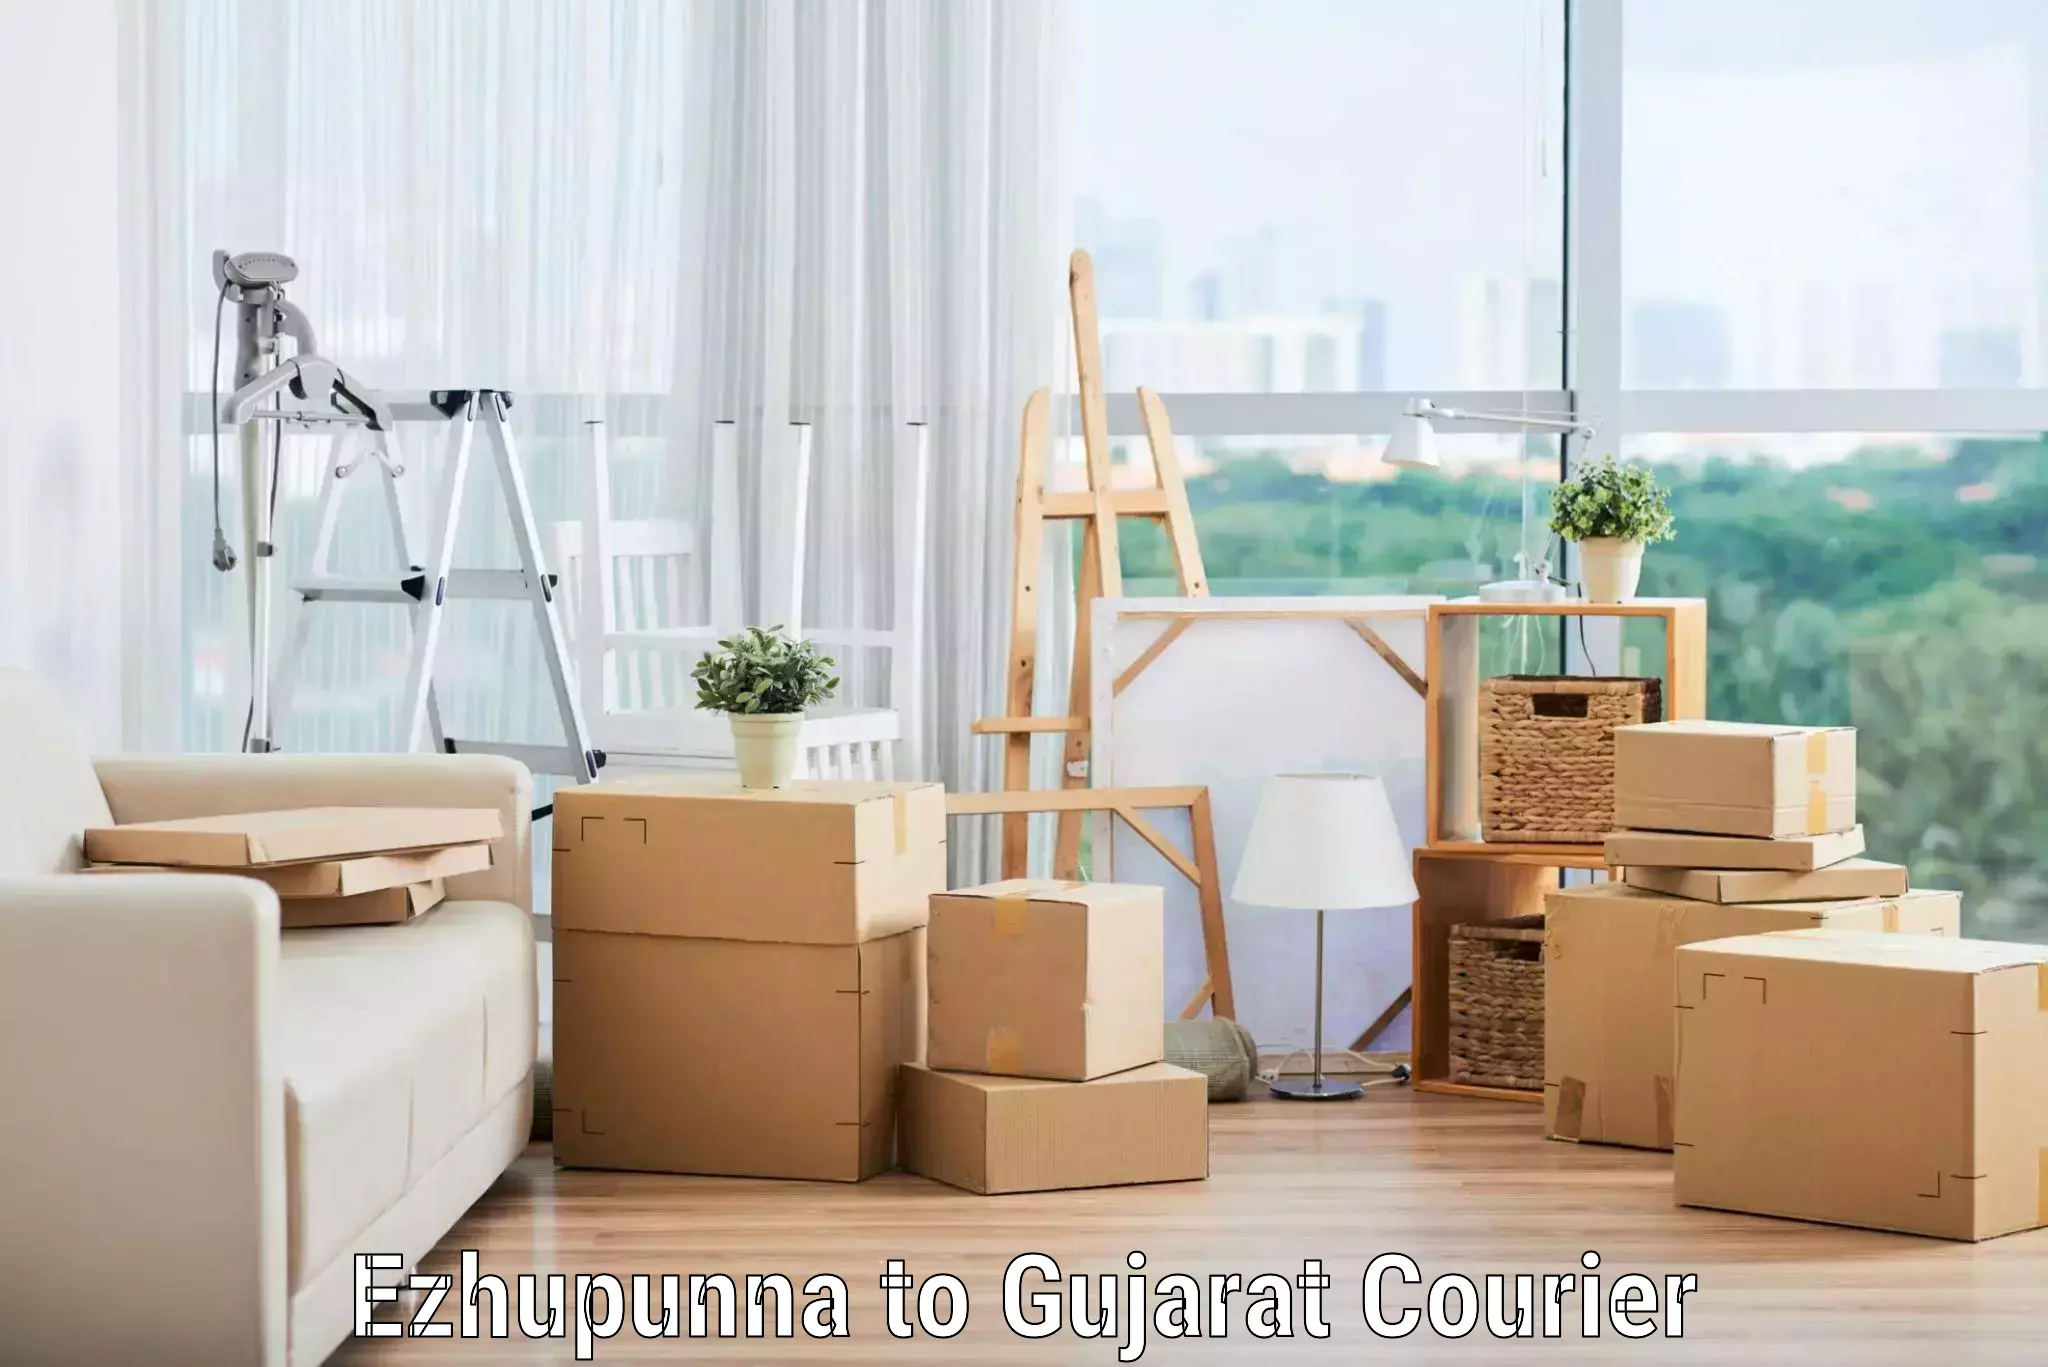 Efficient furniture movers Ezhupunna to Vijapur